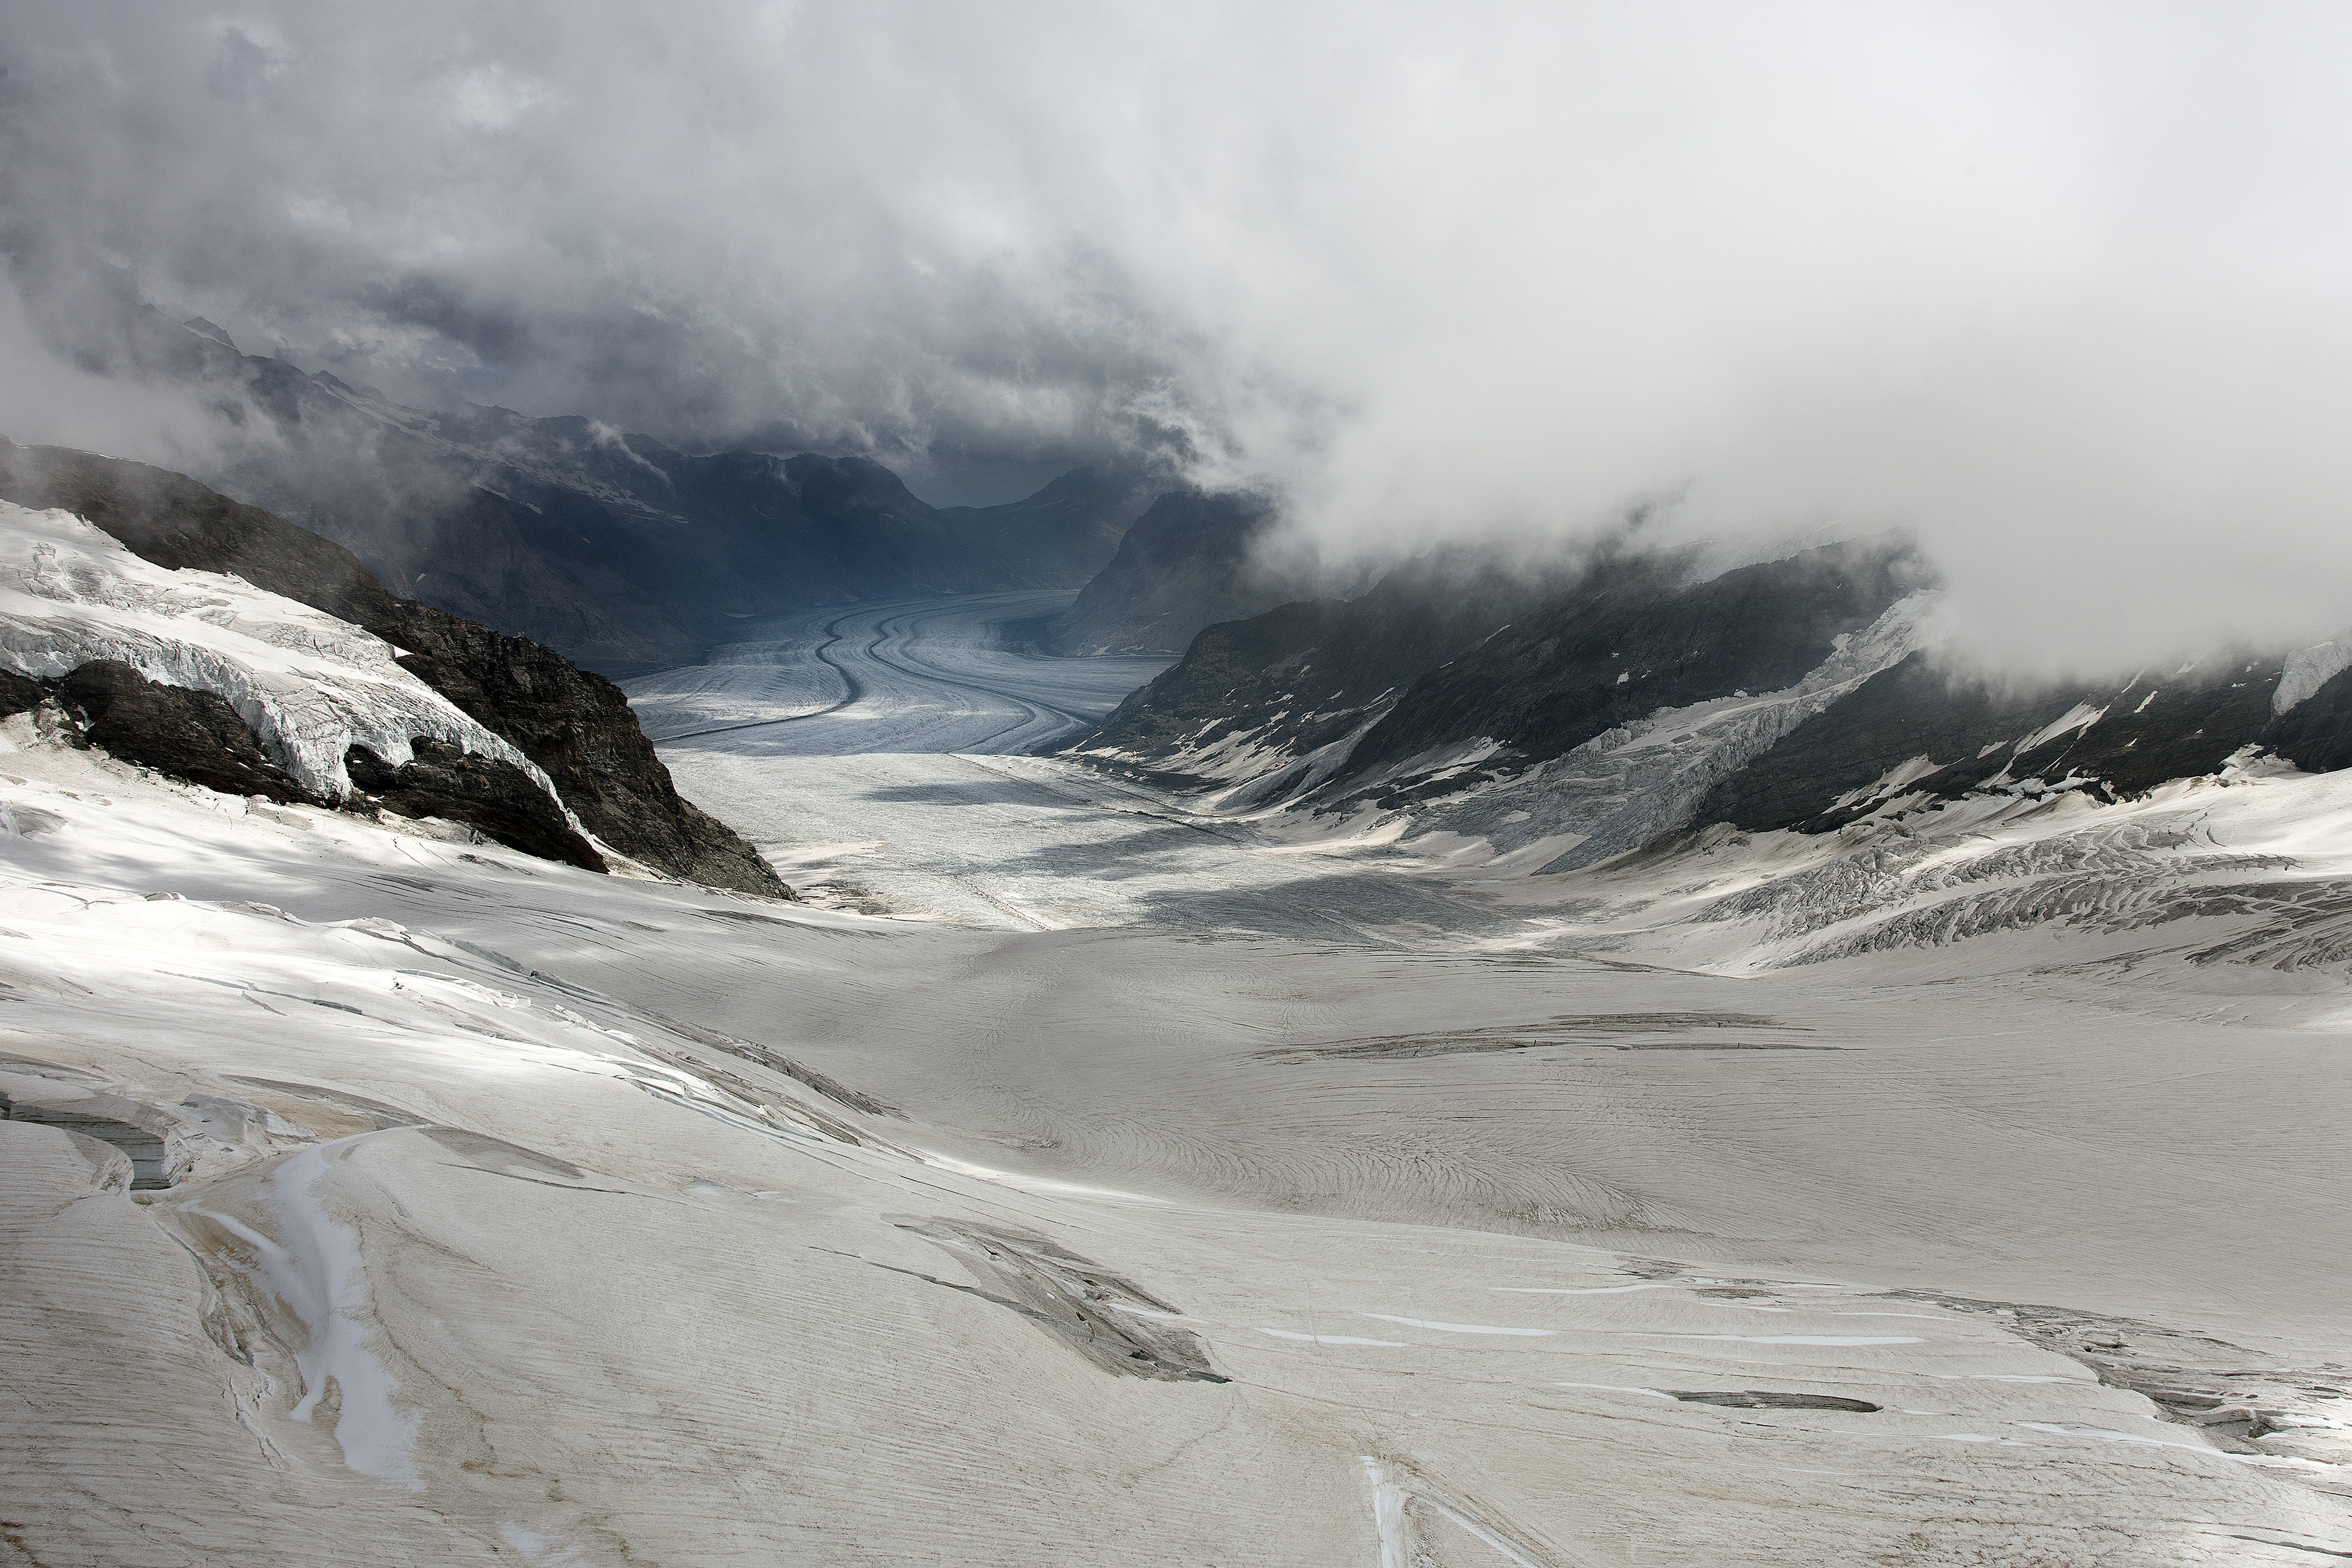 Jungfrau glasier (Switzerland), 2019